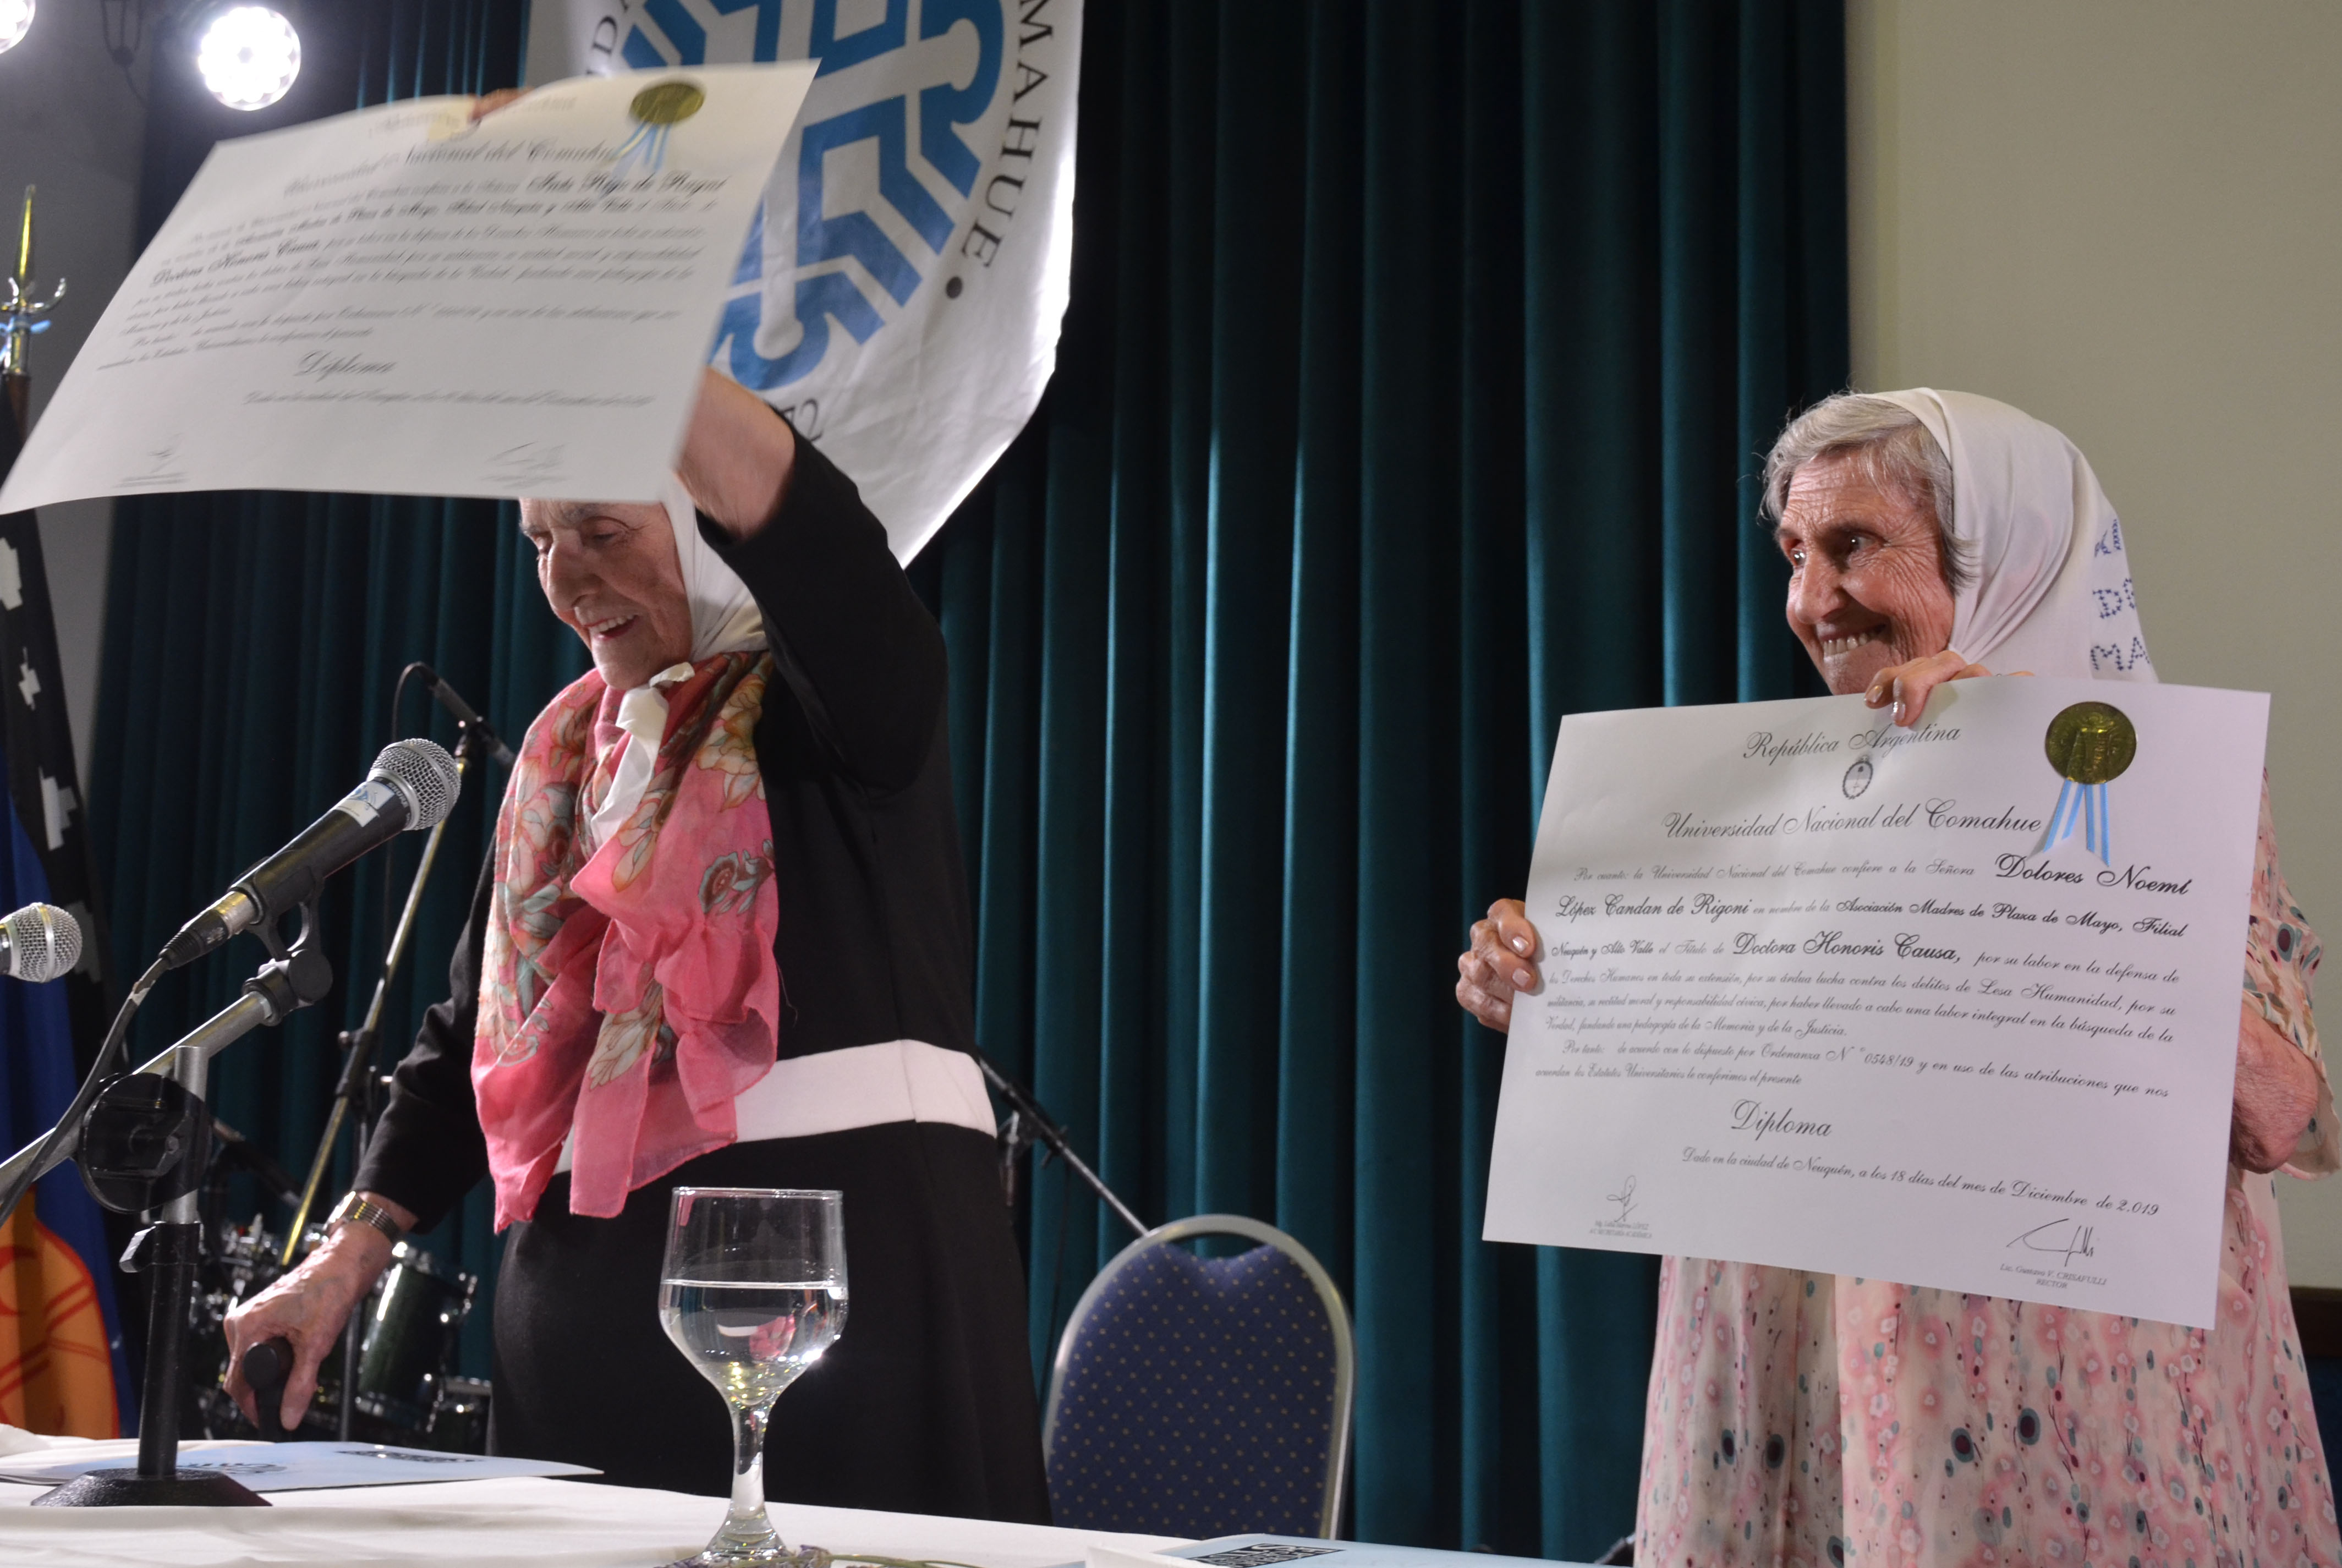 Inés y Lolín  levantan sus diplomas.   Foto: Yamil Regules